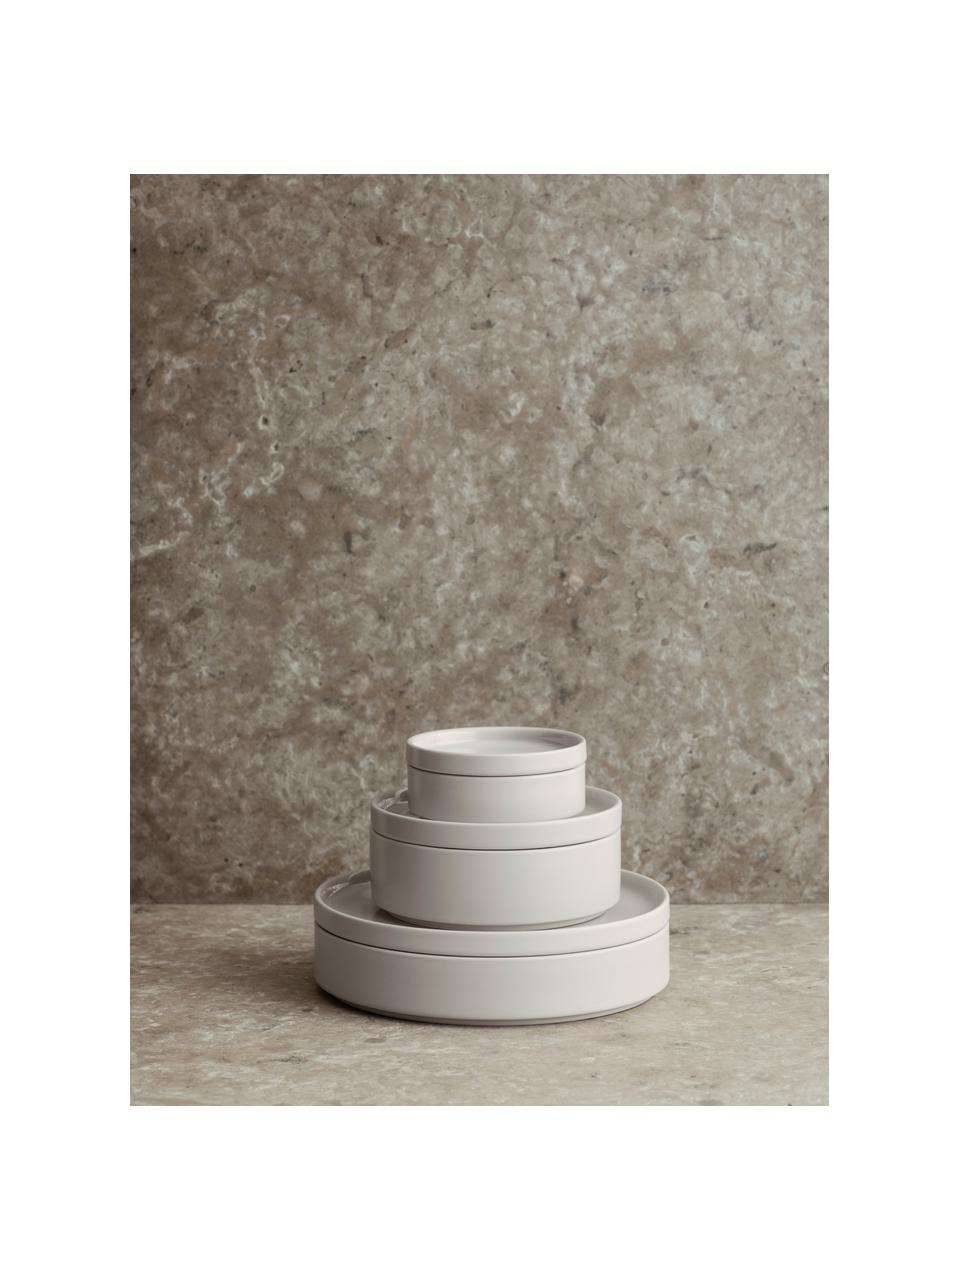 Piatto fondo beige opaco/lucido Pilar 6 pz, Ceramica, Beige, Ø 20 x Alt. 4 cm